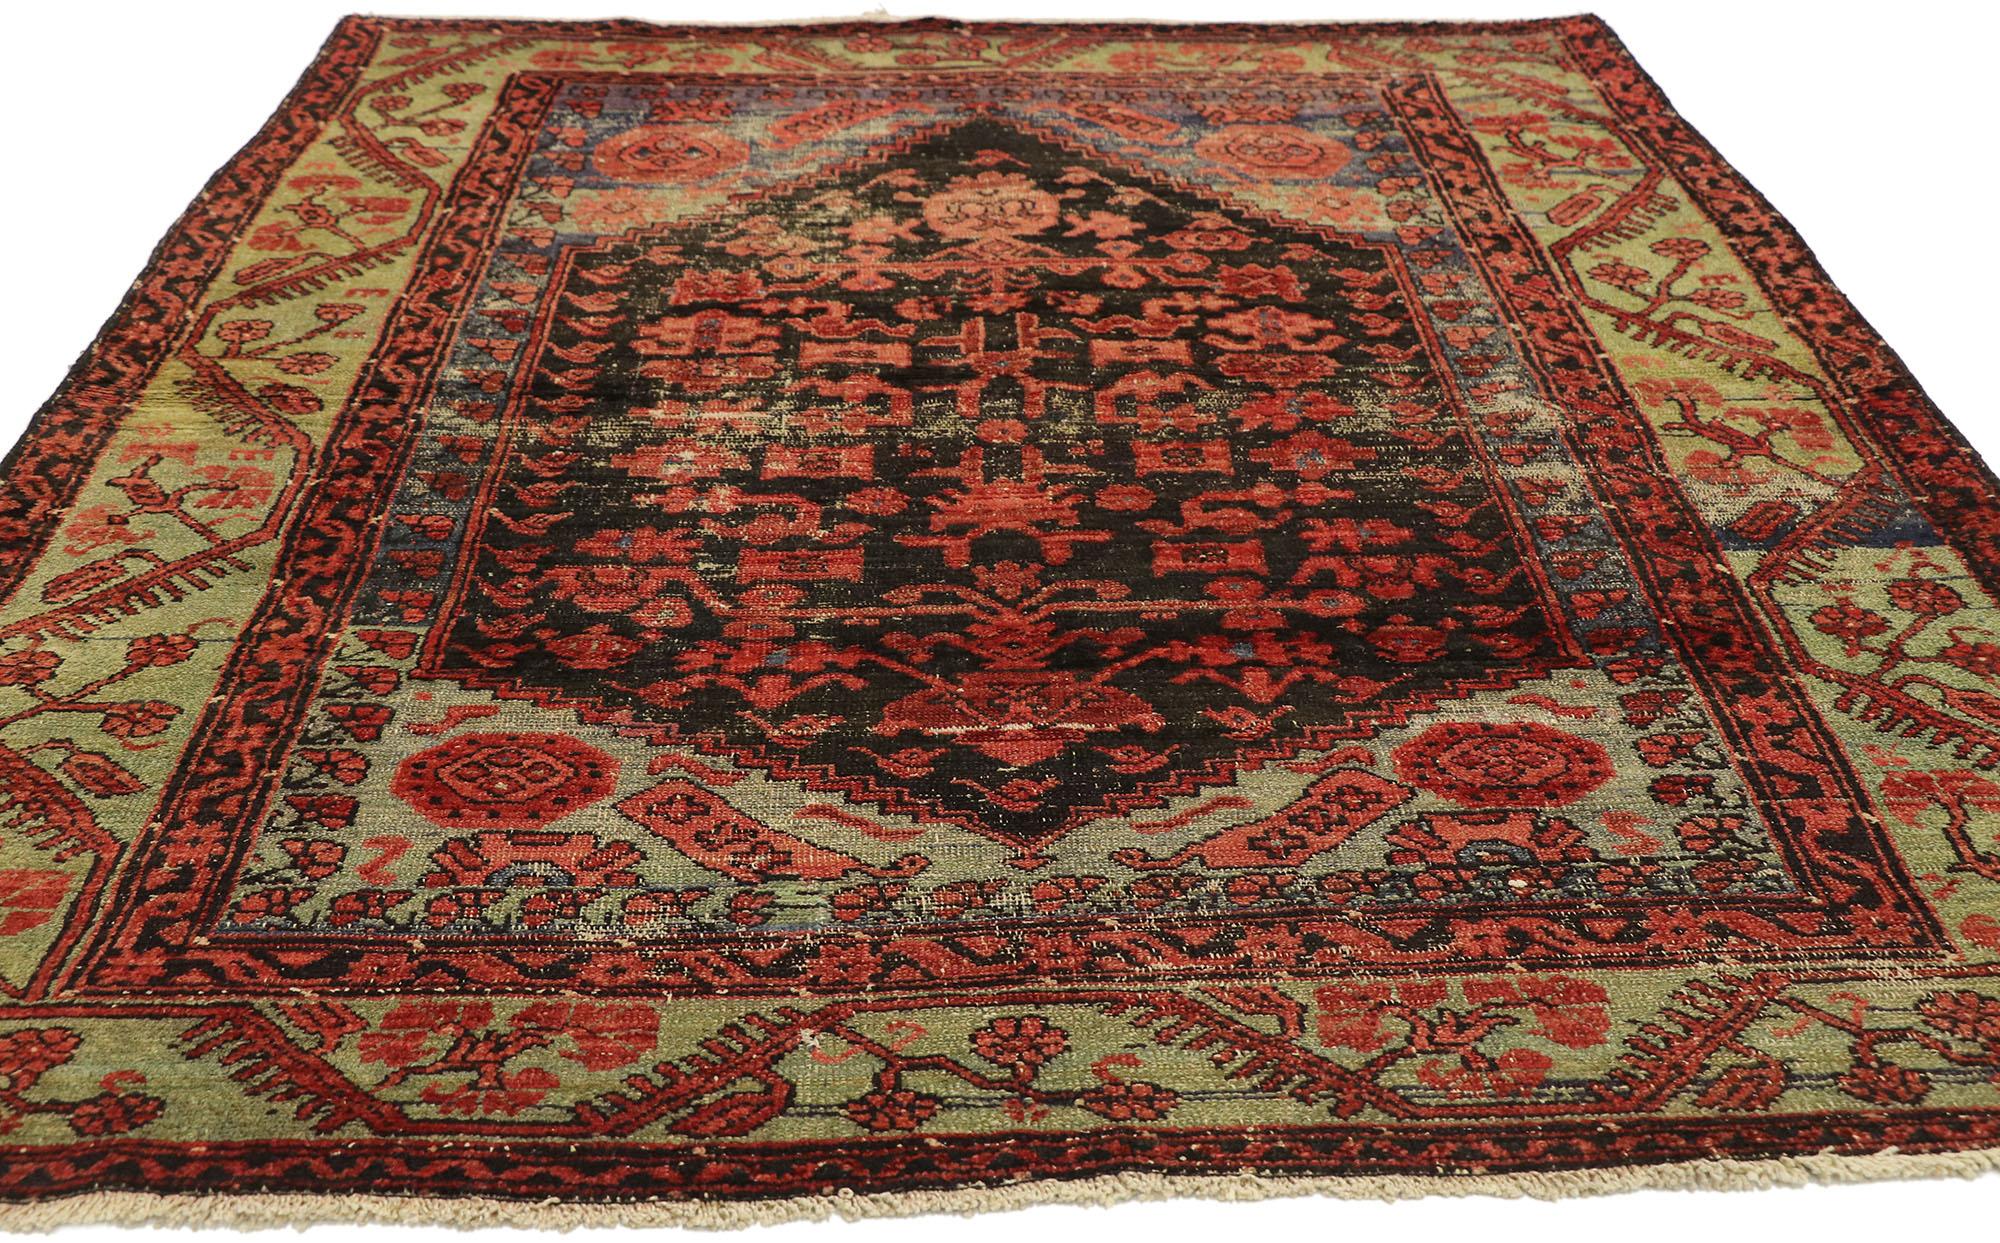 rustic industrial style rug